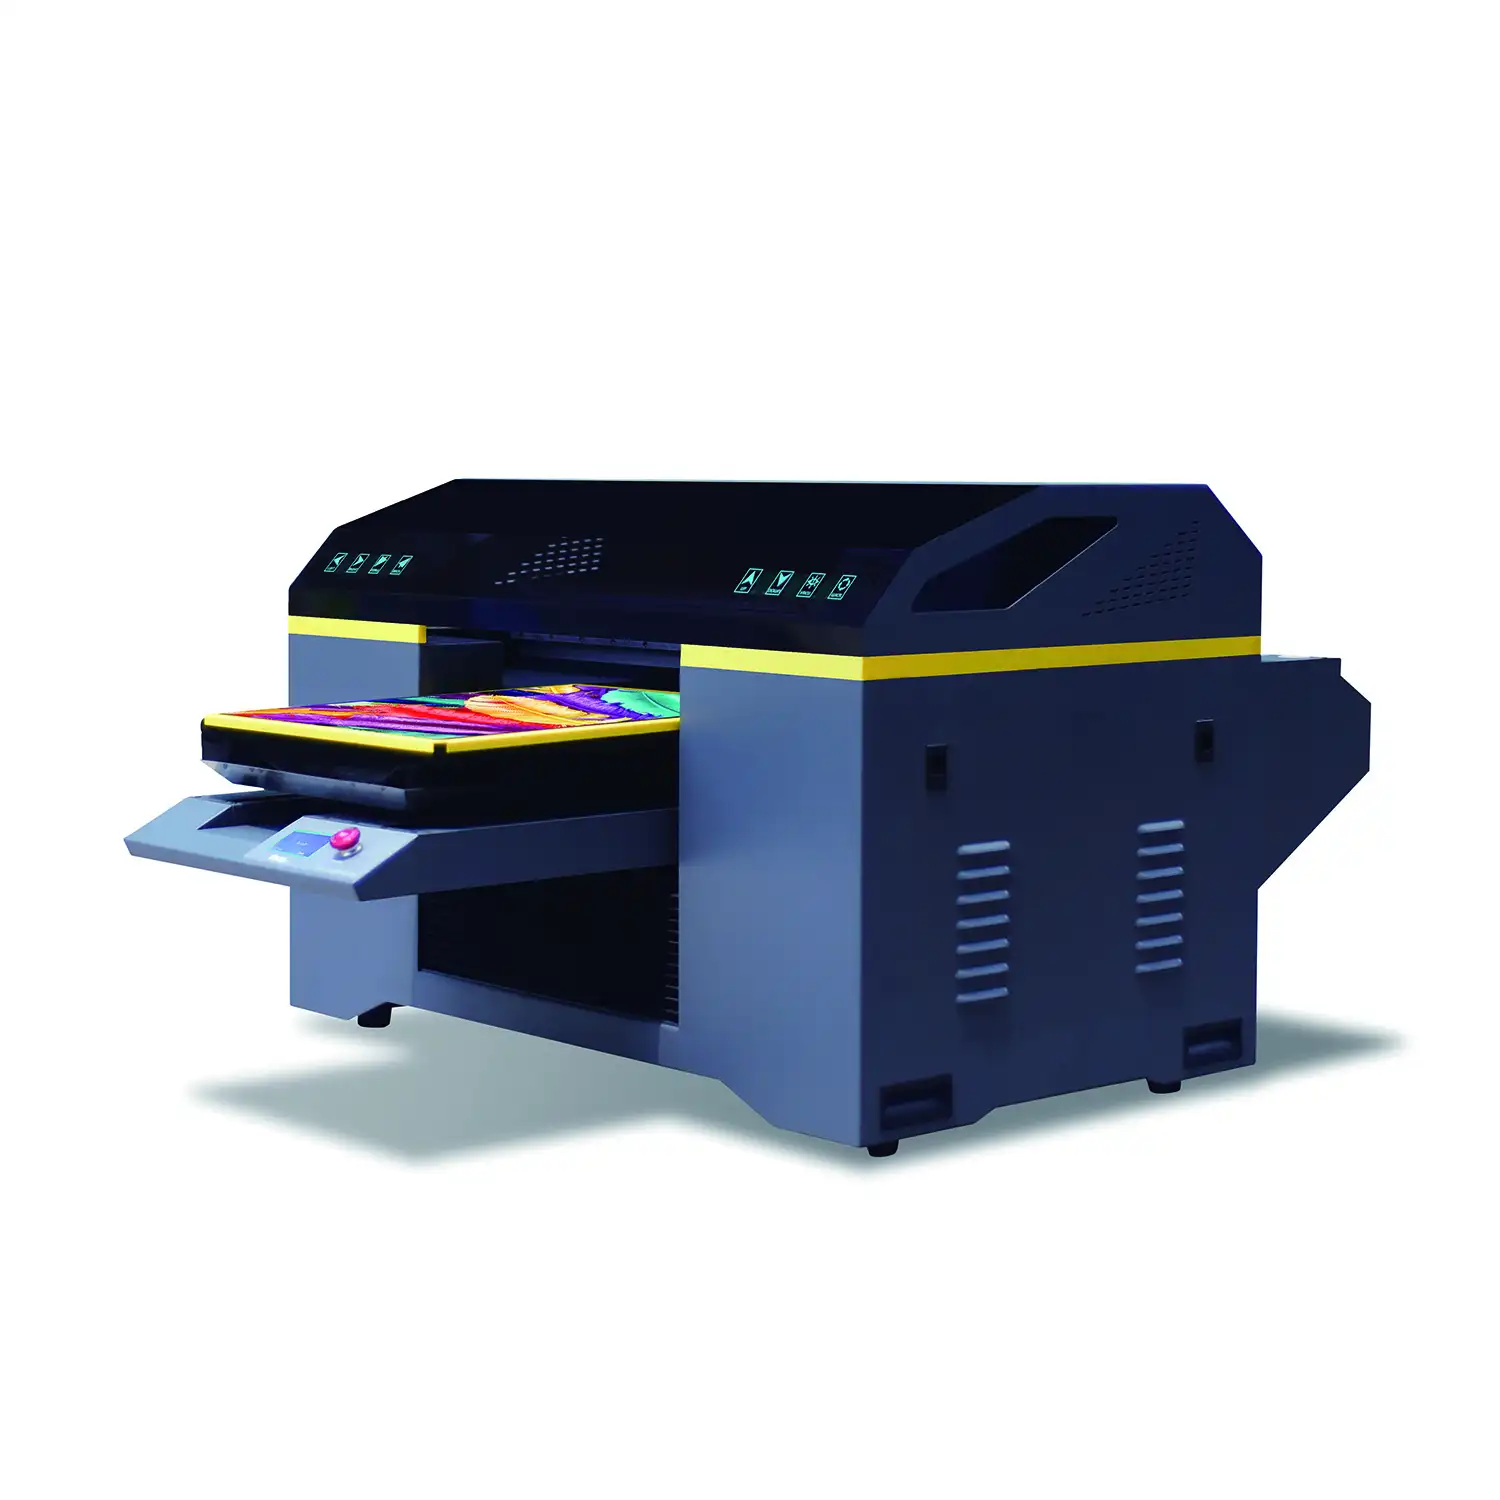 Цифровой Принтер DTG, принтер для печати на ткани, футболках, шелке, шерсти, хлопке, A2 DTG принтер с CE